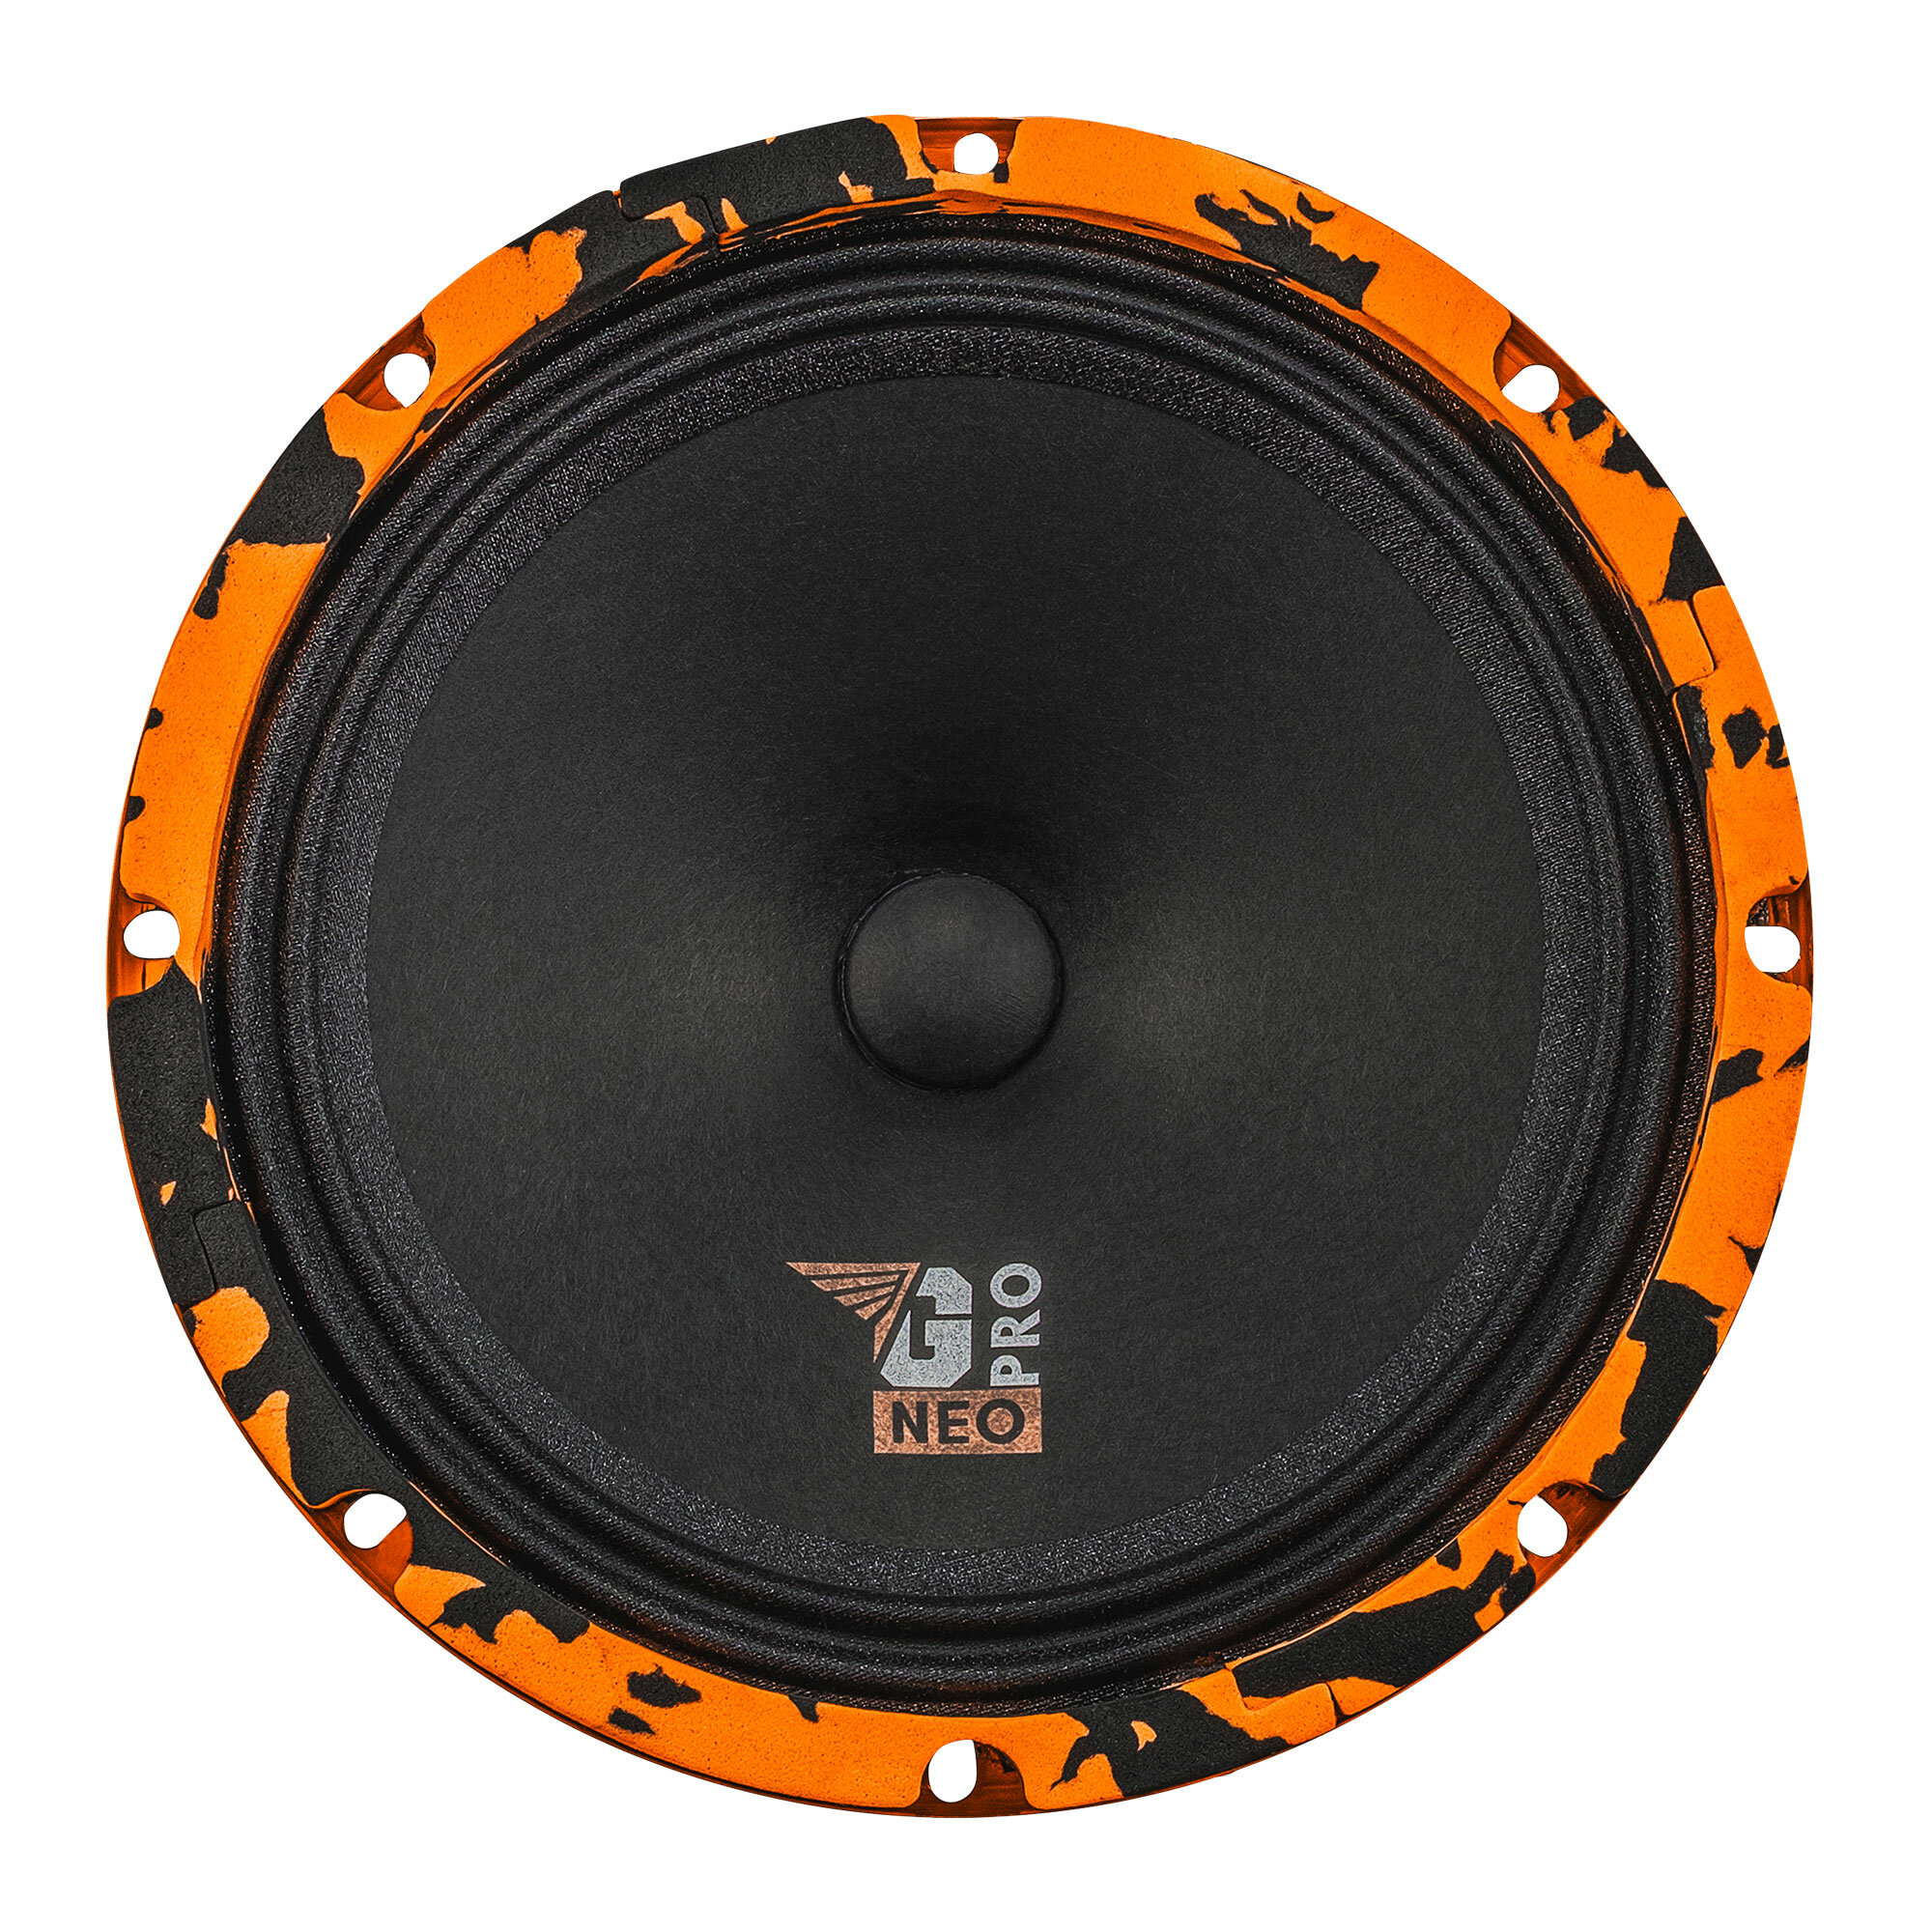 Колонки для автомобиля DL Audio Gryphon PRO 200 Neo / эстрадная акустика на неодимовом магните 20 см. (8 дюймов) / комплект 2 шт.